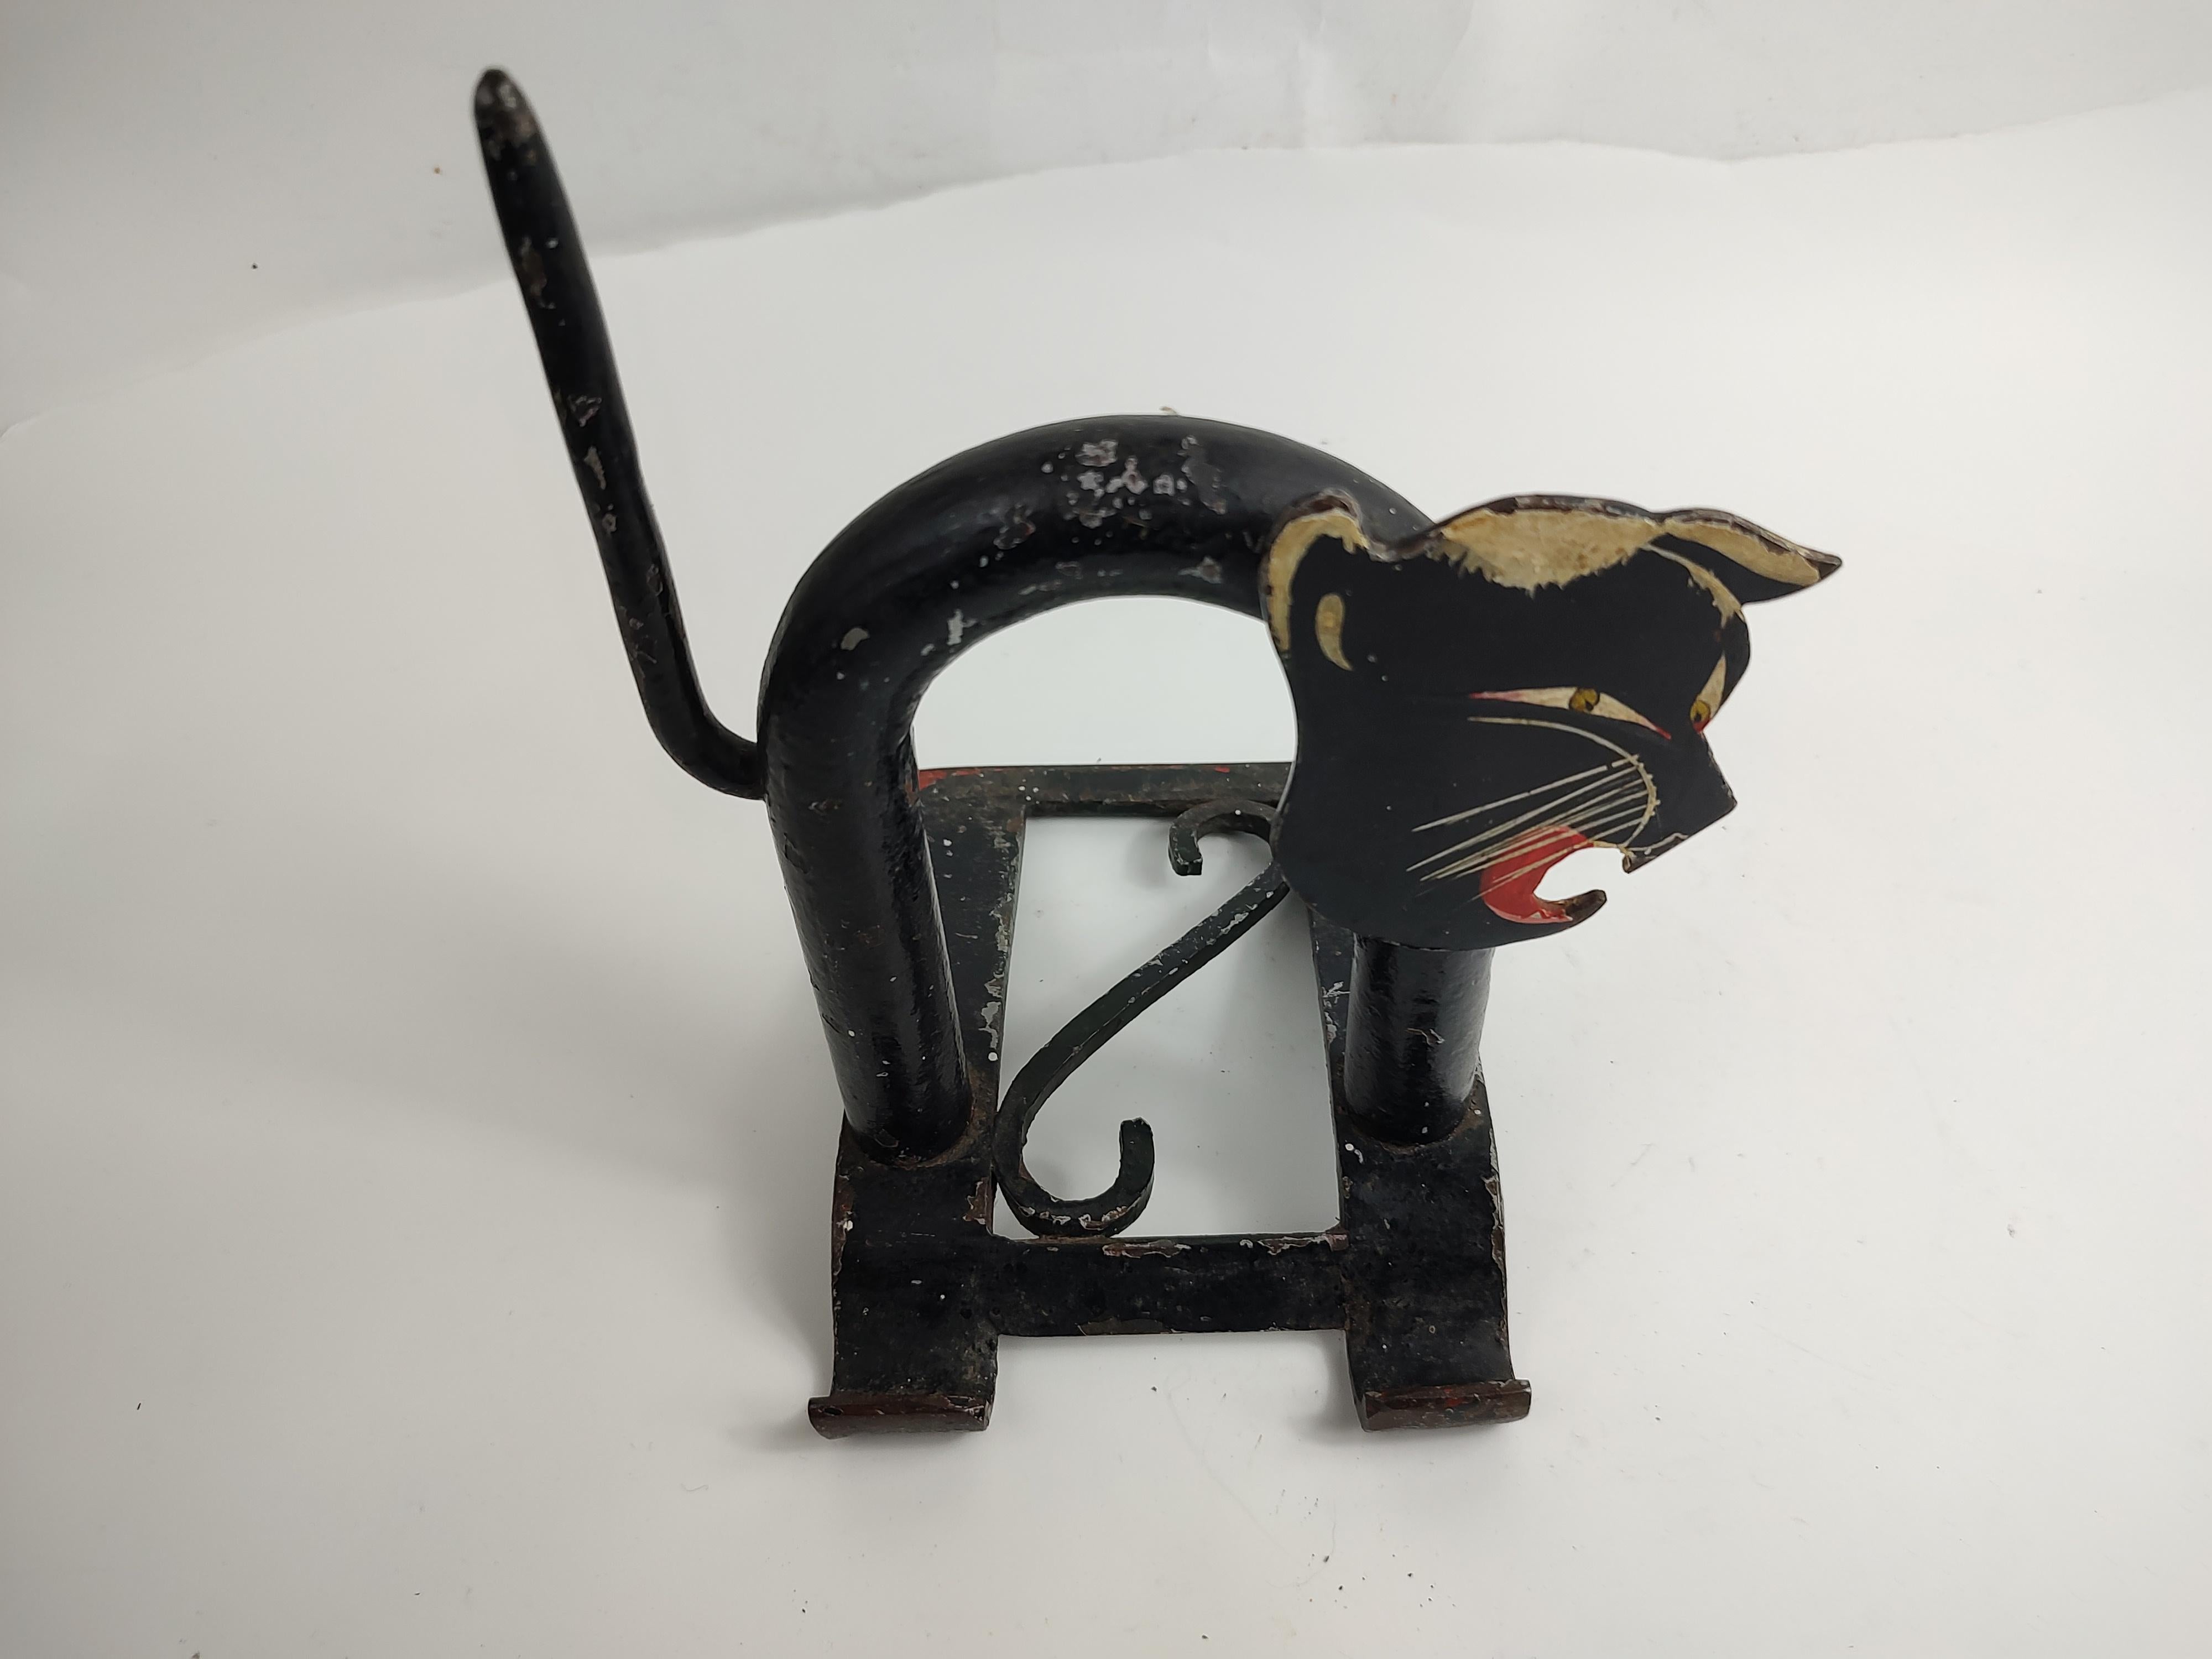 Fabuleux arrêt de porte en fer et acier en forme de chat noir hurlant. Stylisé à la manière de Walter Von Neesen pour Chase. En excellent état vintage avec une usure minimale.